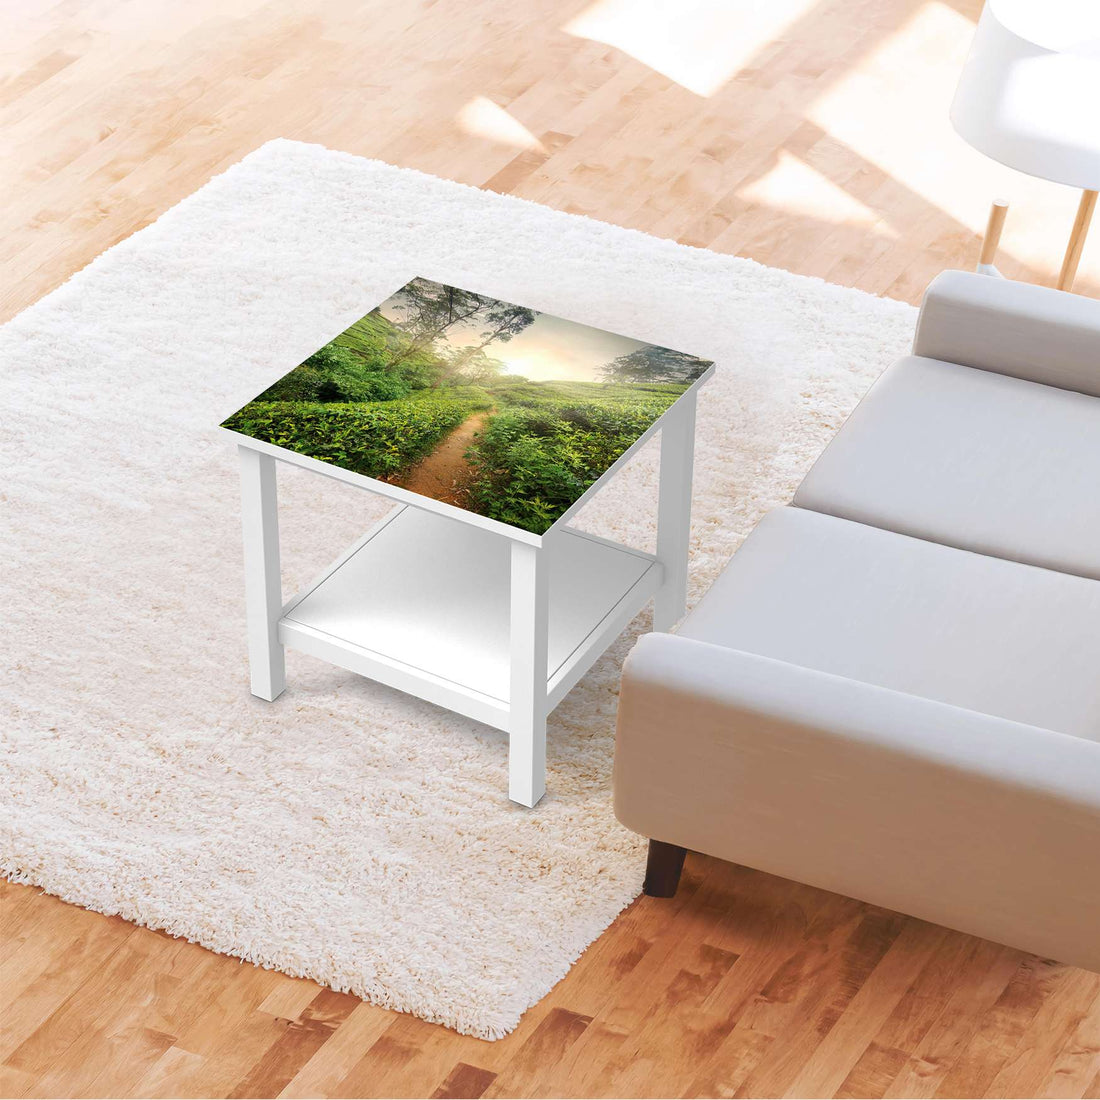 Möbel Klebefolie Green Tea Fields - IKEA Hemnes Beistelltisch 55x55 cm - Wohnzimmer